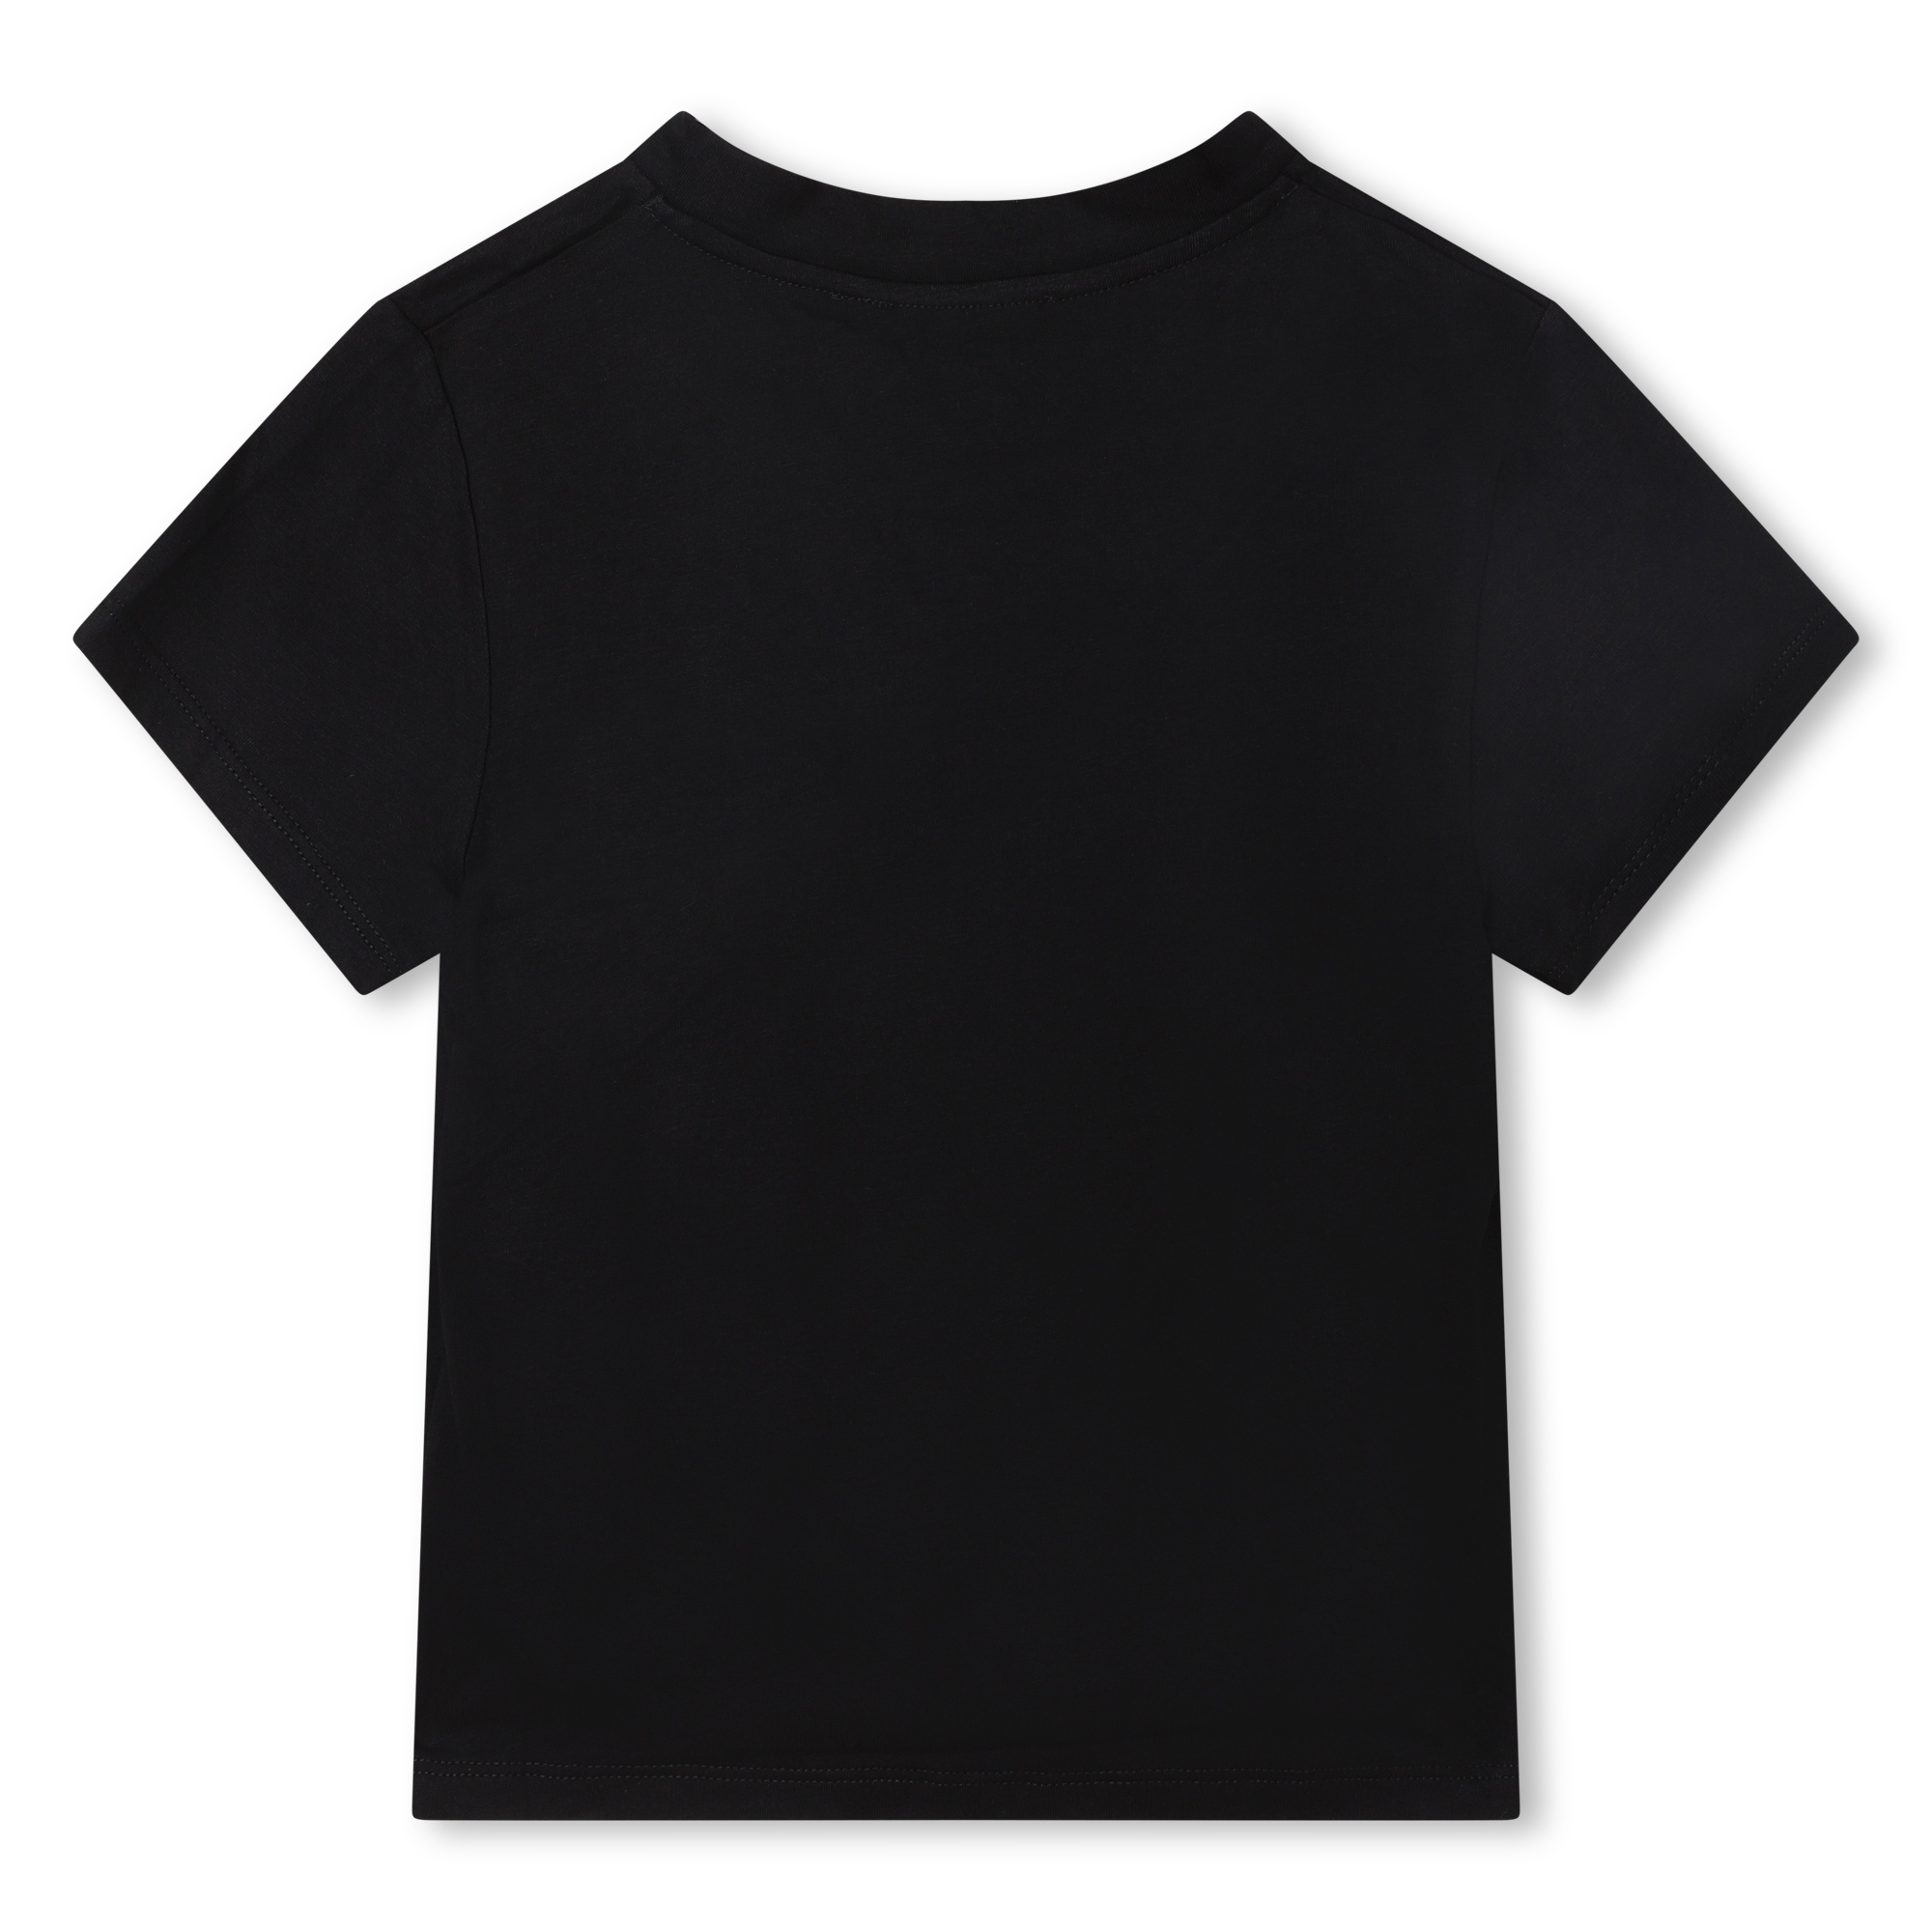 2-in-1-T-shirt DKNY Voor